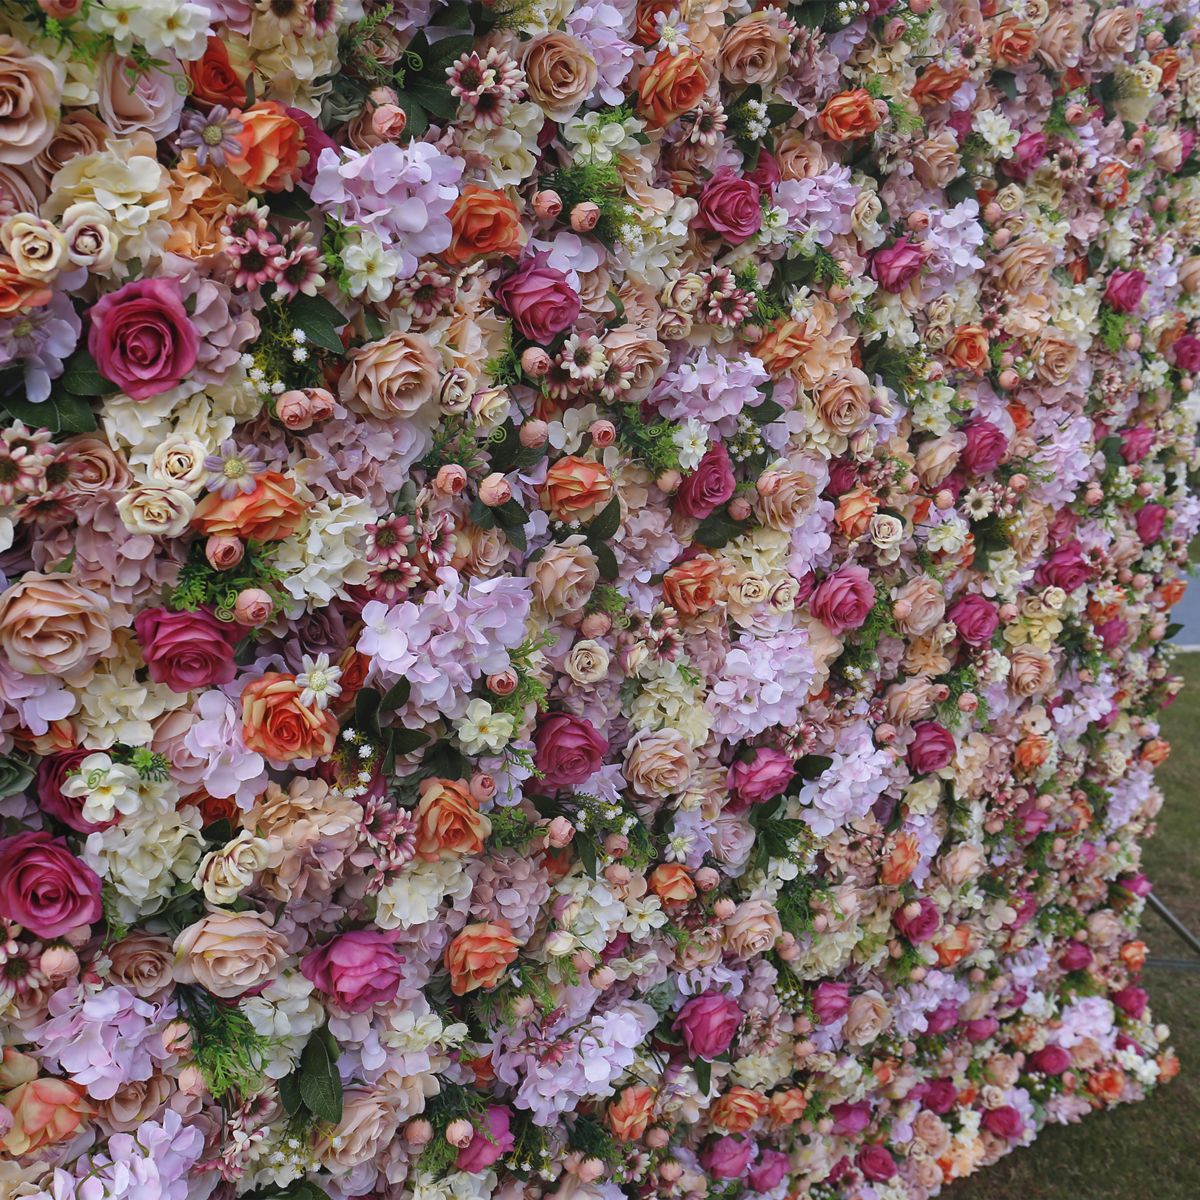  Simulated floral mgbidi agbamakwụkwọ ịchọ mma n'èzí ọrụ mma 